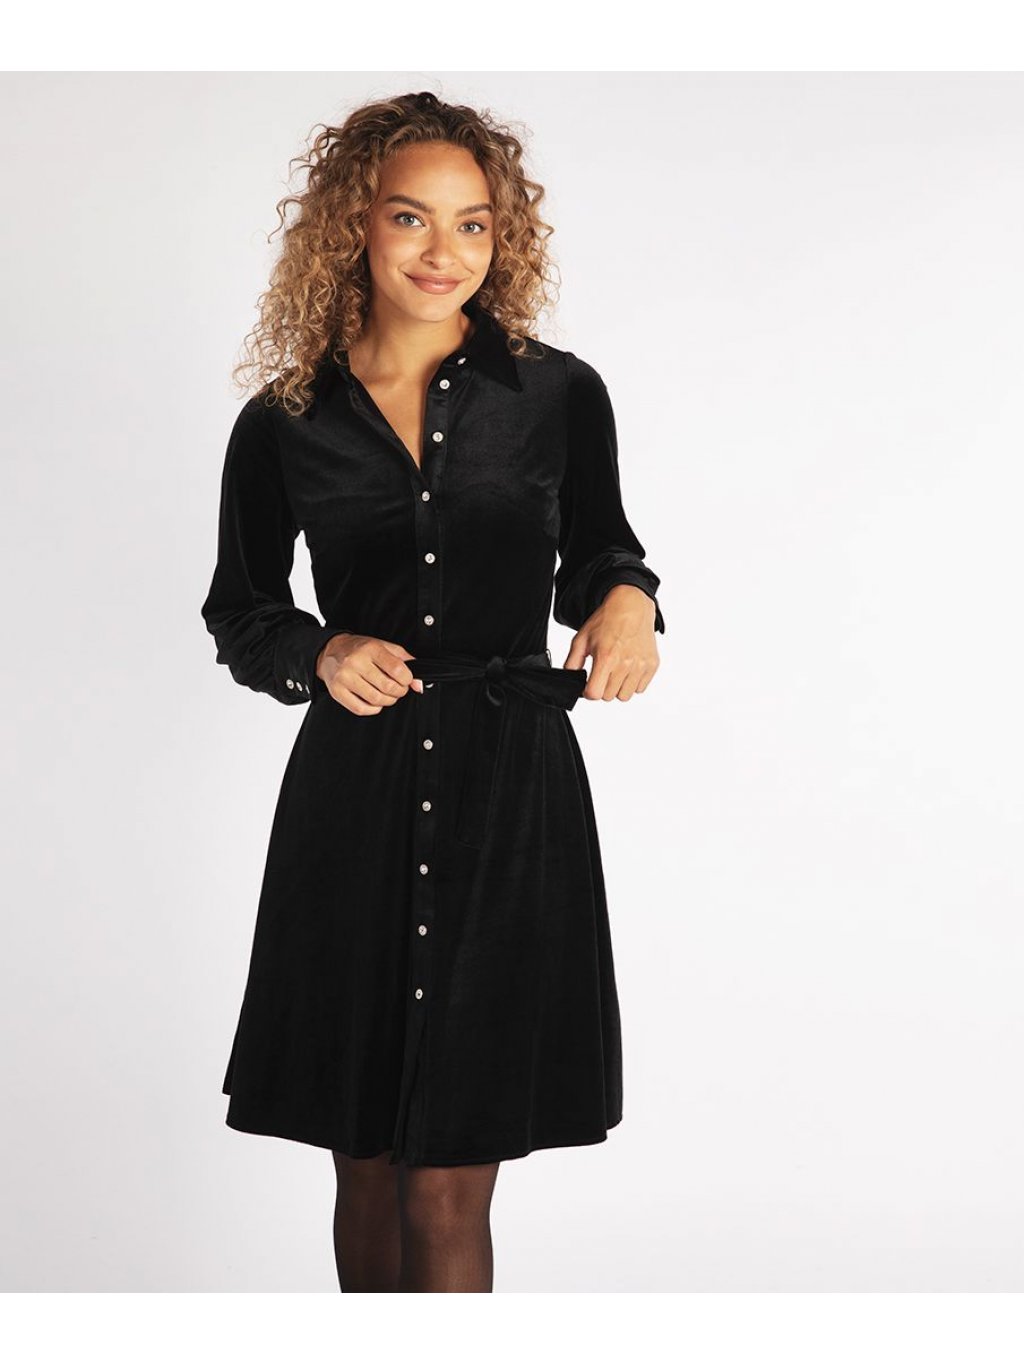 Šaty Esqualo 30720 černé sametové